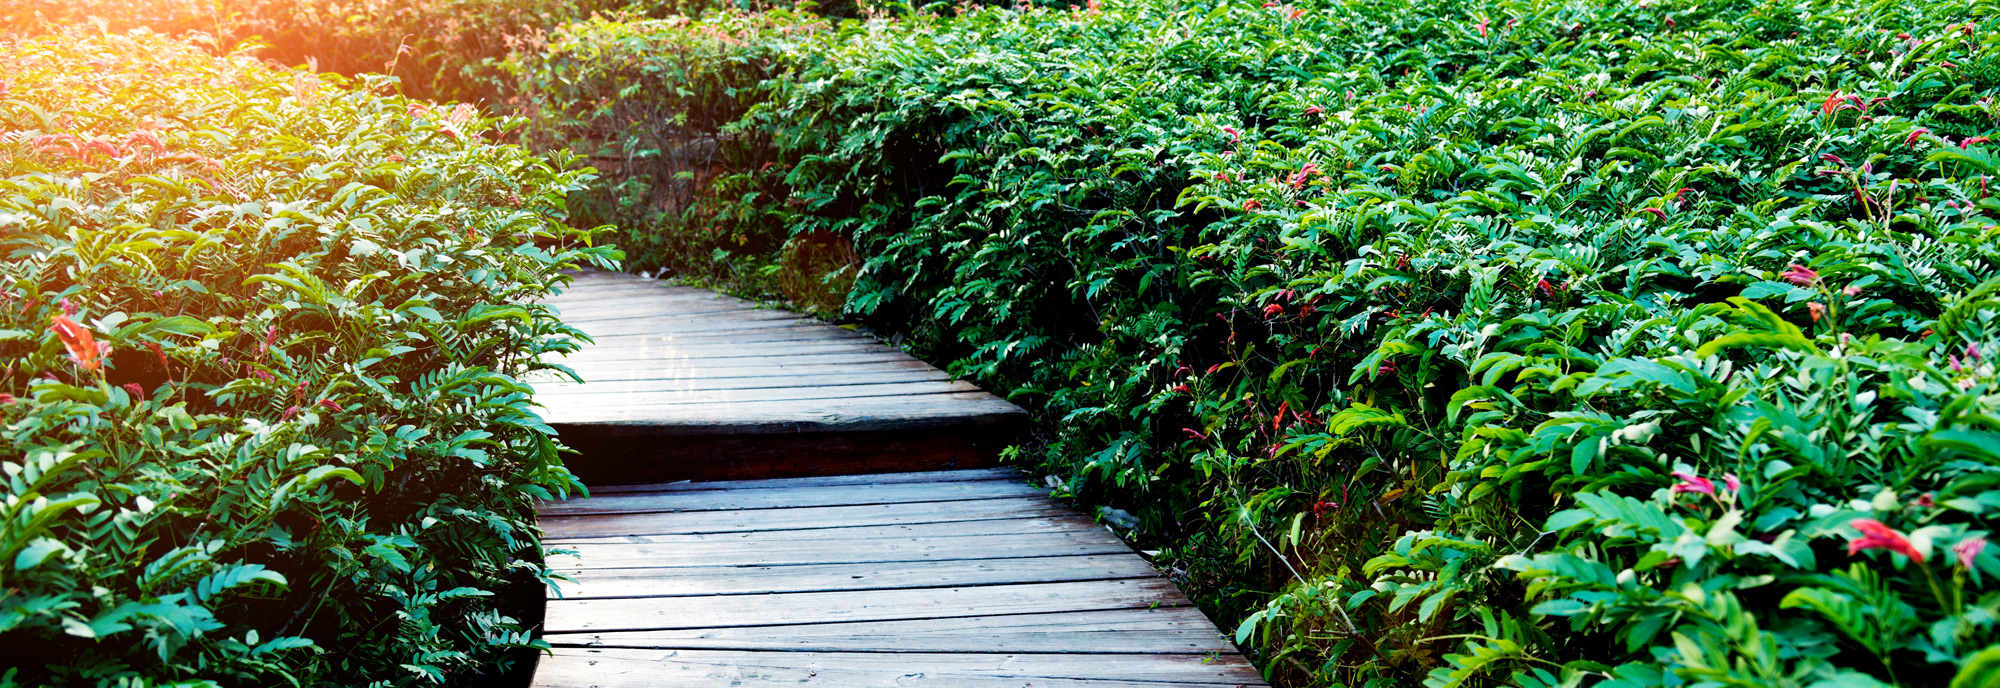 garden-wooden-path